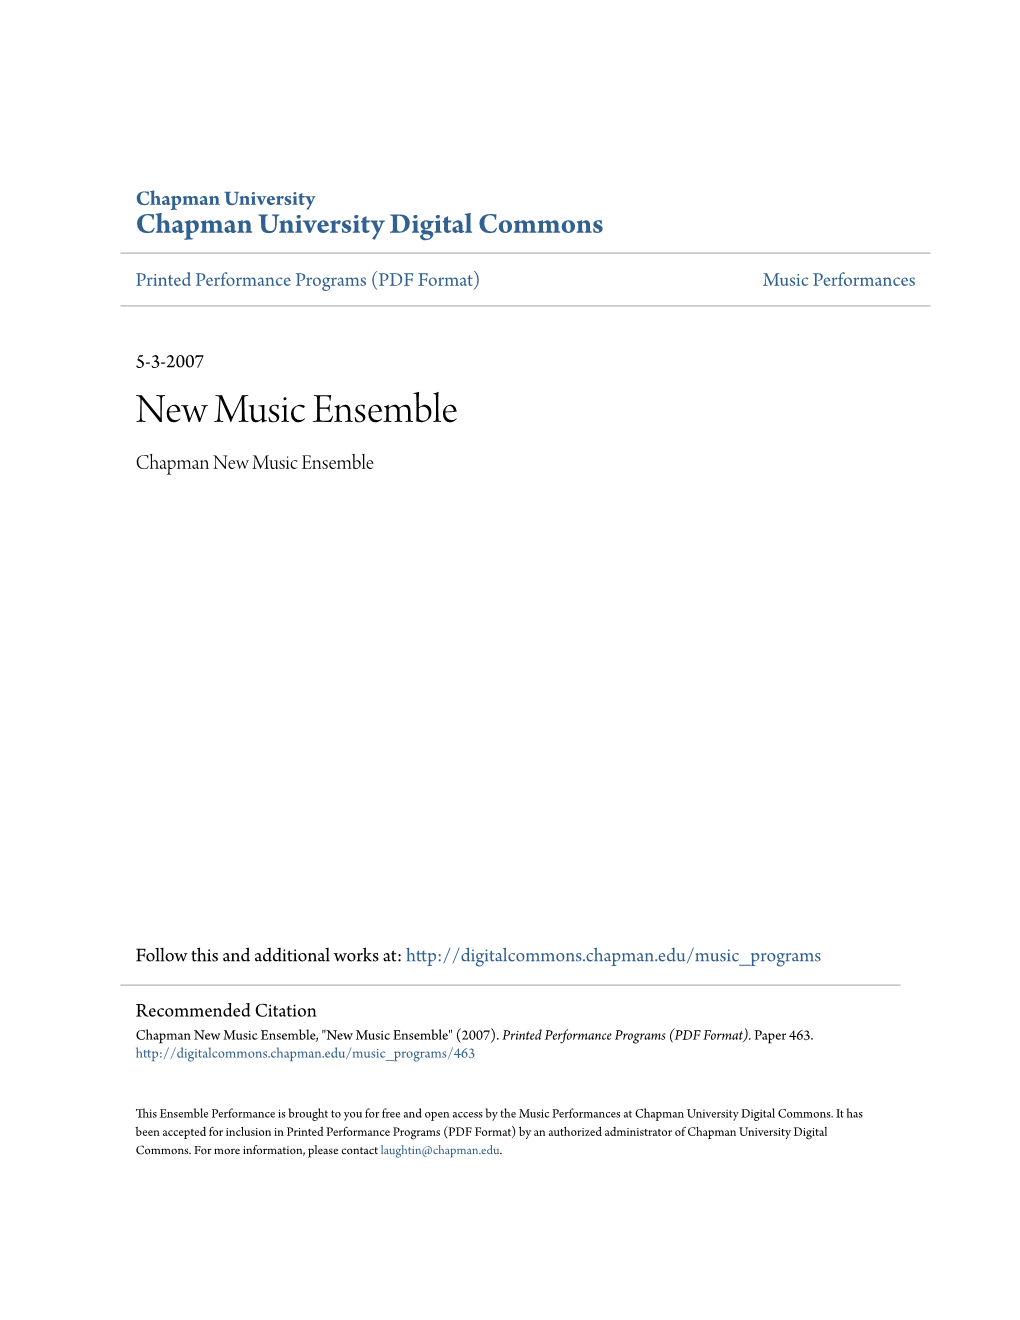 New Music Ensemble Chapman New Music Ensemble